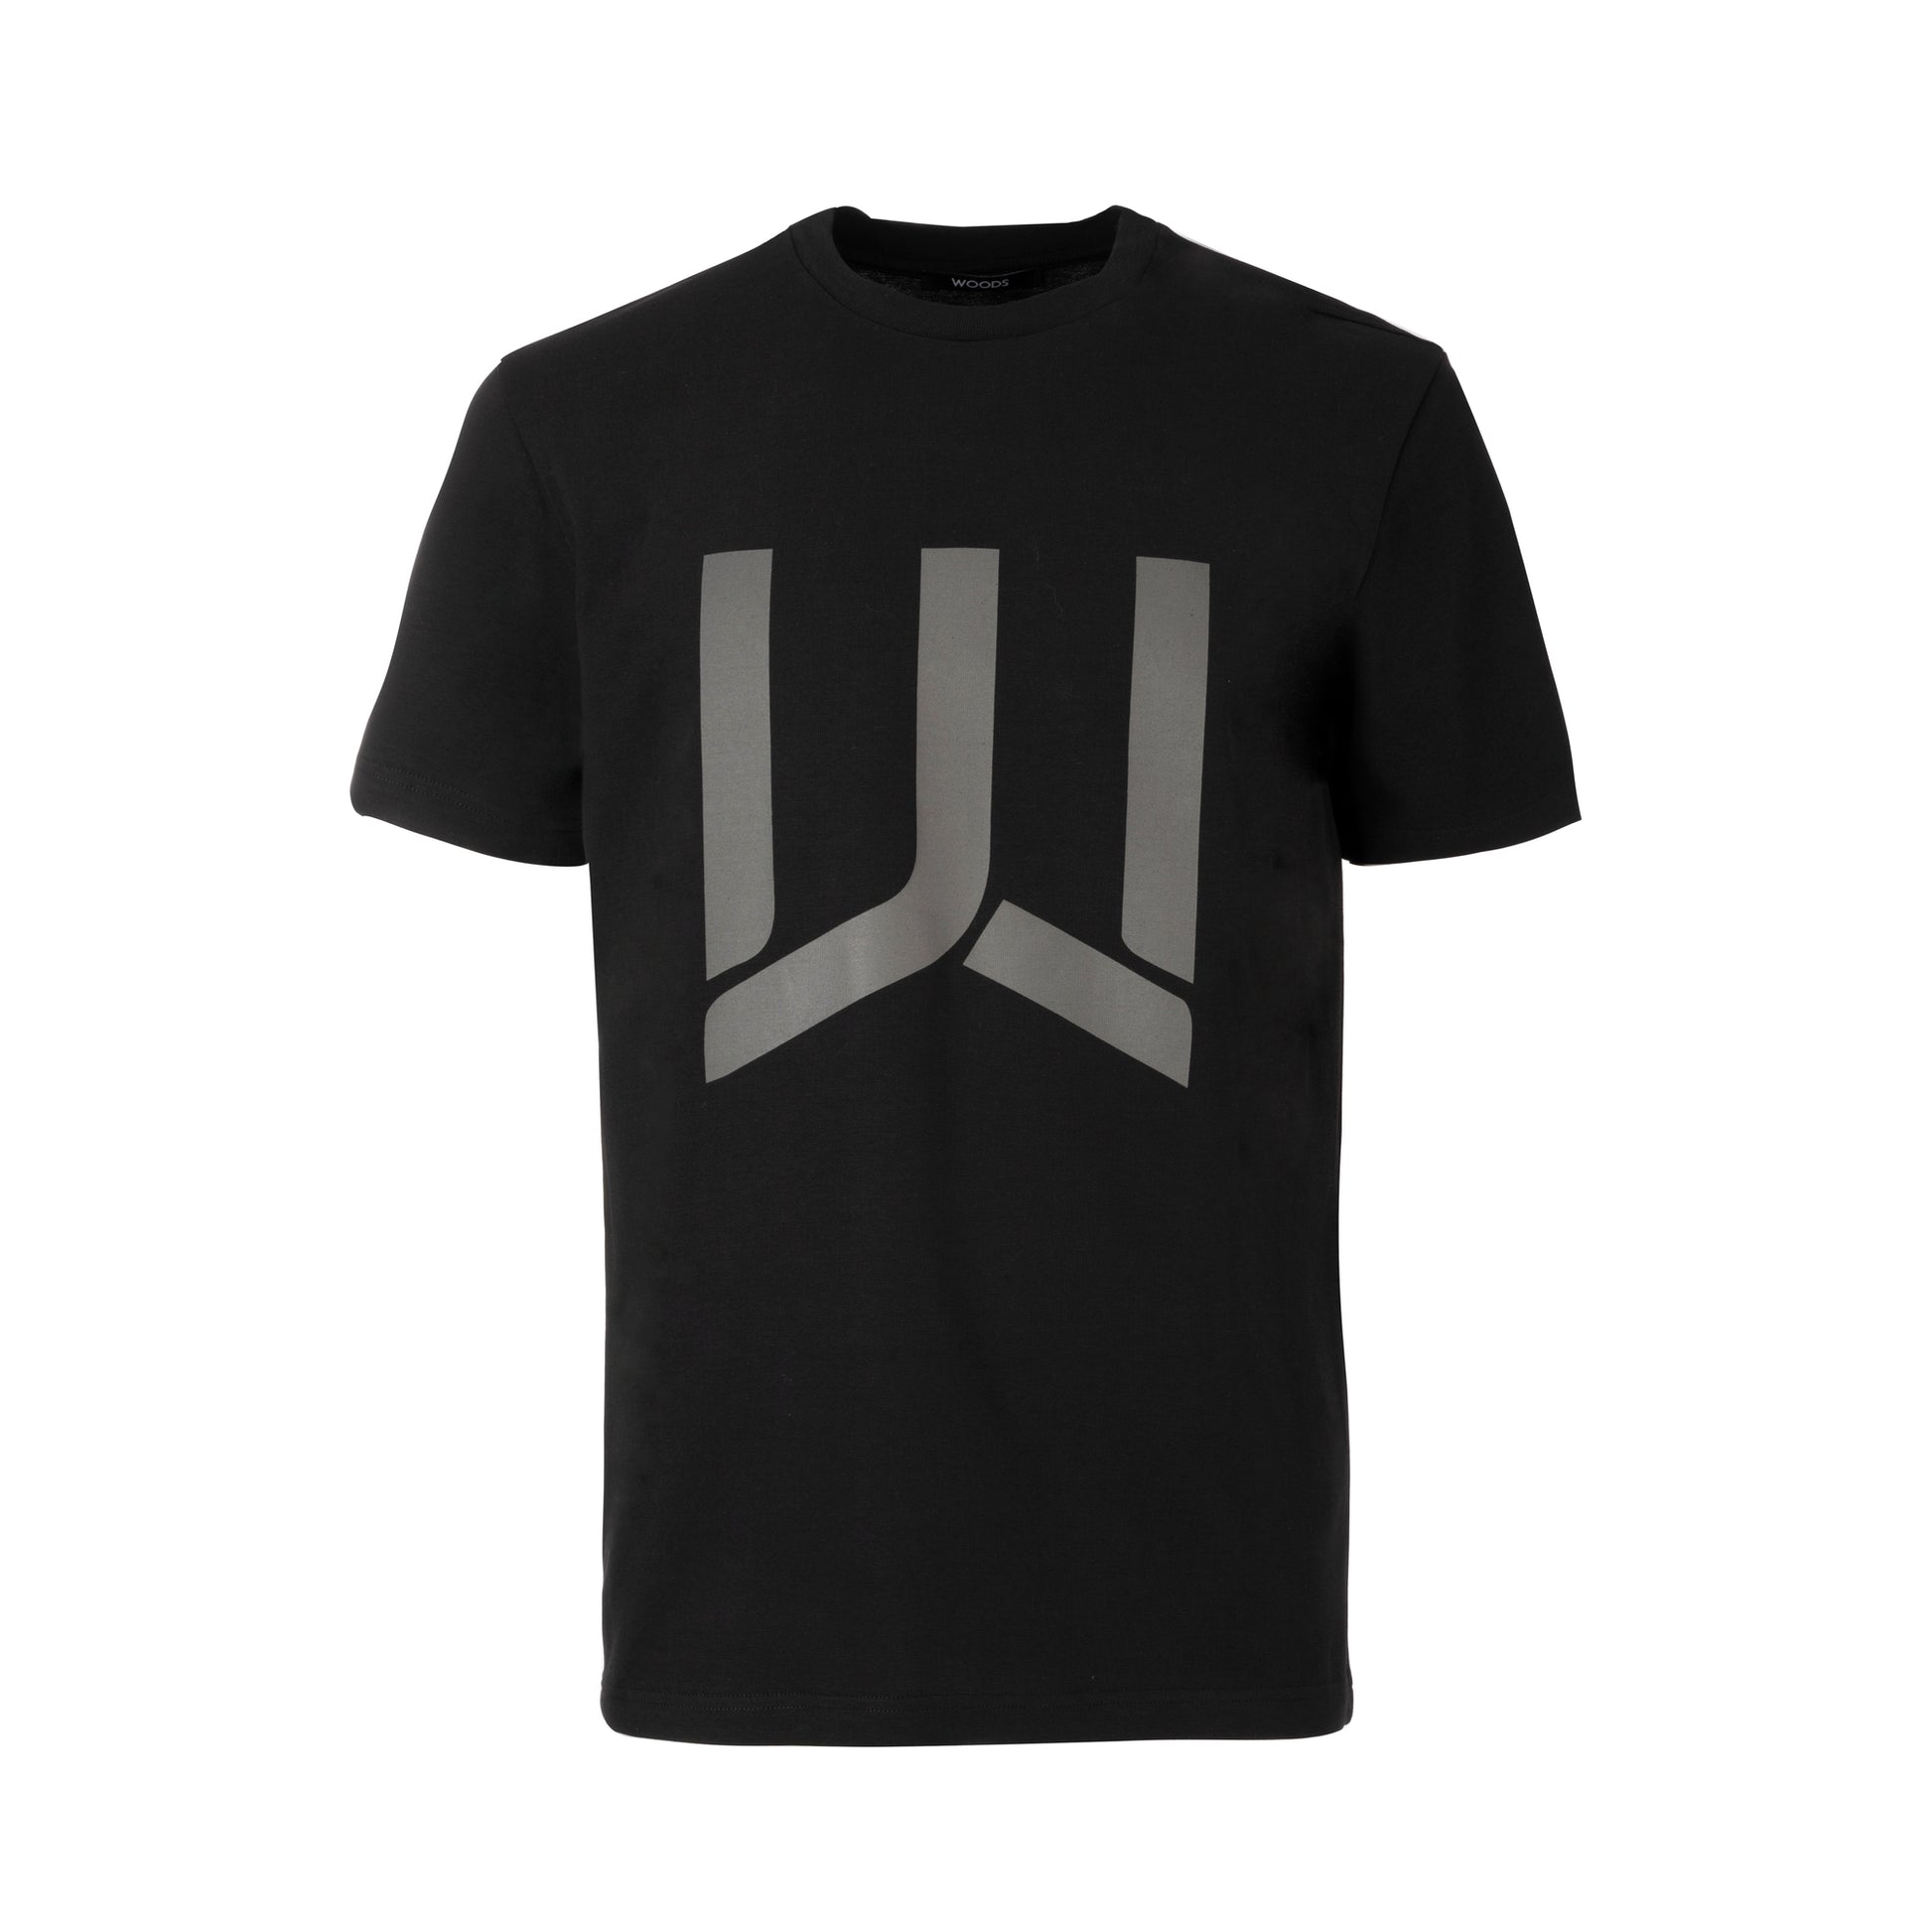 WOODS - T-shirt Big Logo - I migliori prodotti Made in Italy da Fiera di Monza Shop - Solo 49.90€! Acquista subito su Fiera di Monza Shop!